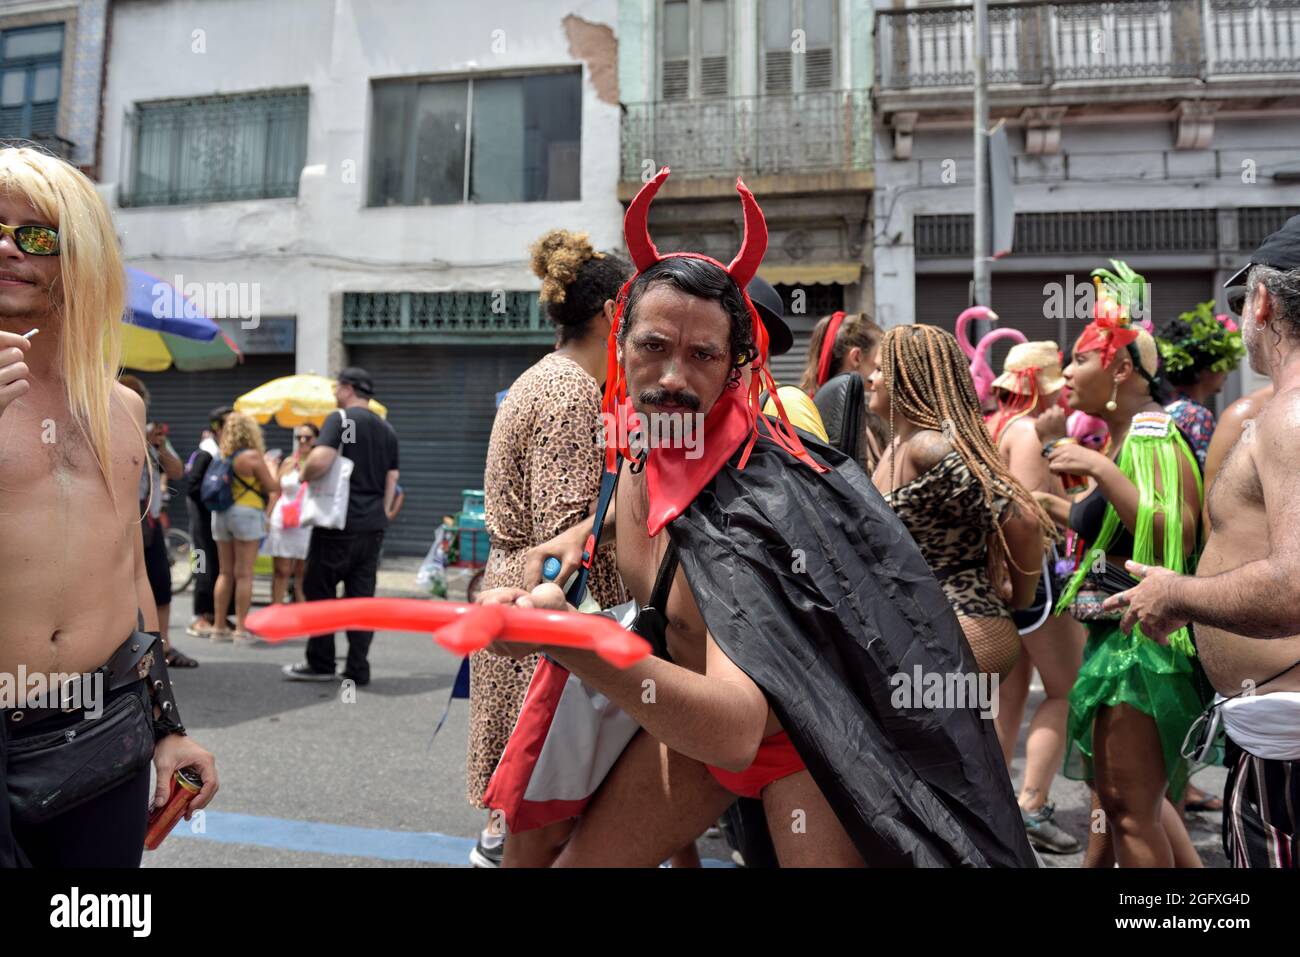 Brésil – 16 février 2020 : un homme portant un costume de diable se produit pendant le Carnaval de Rio de Janeiro, un événement d'intérêt touristique international Banque D'Images